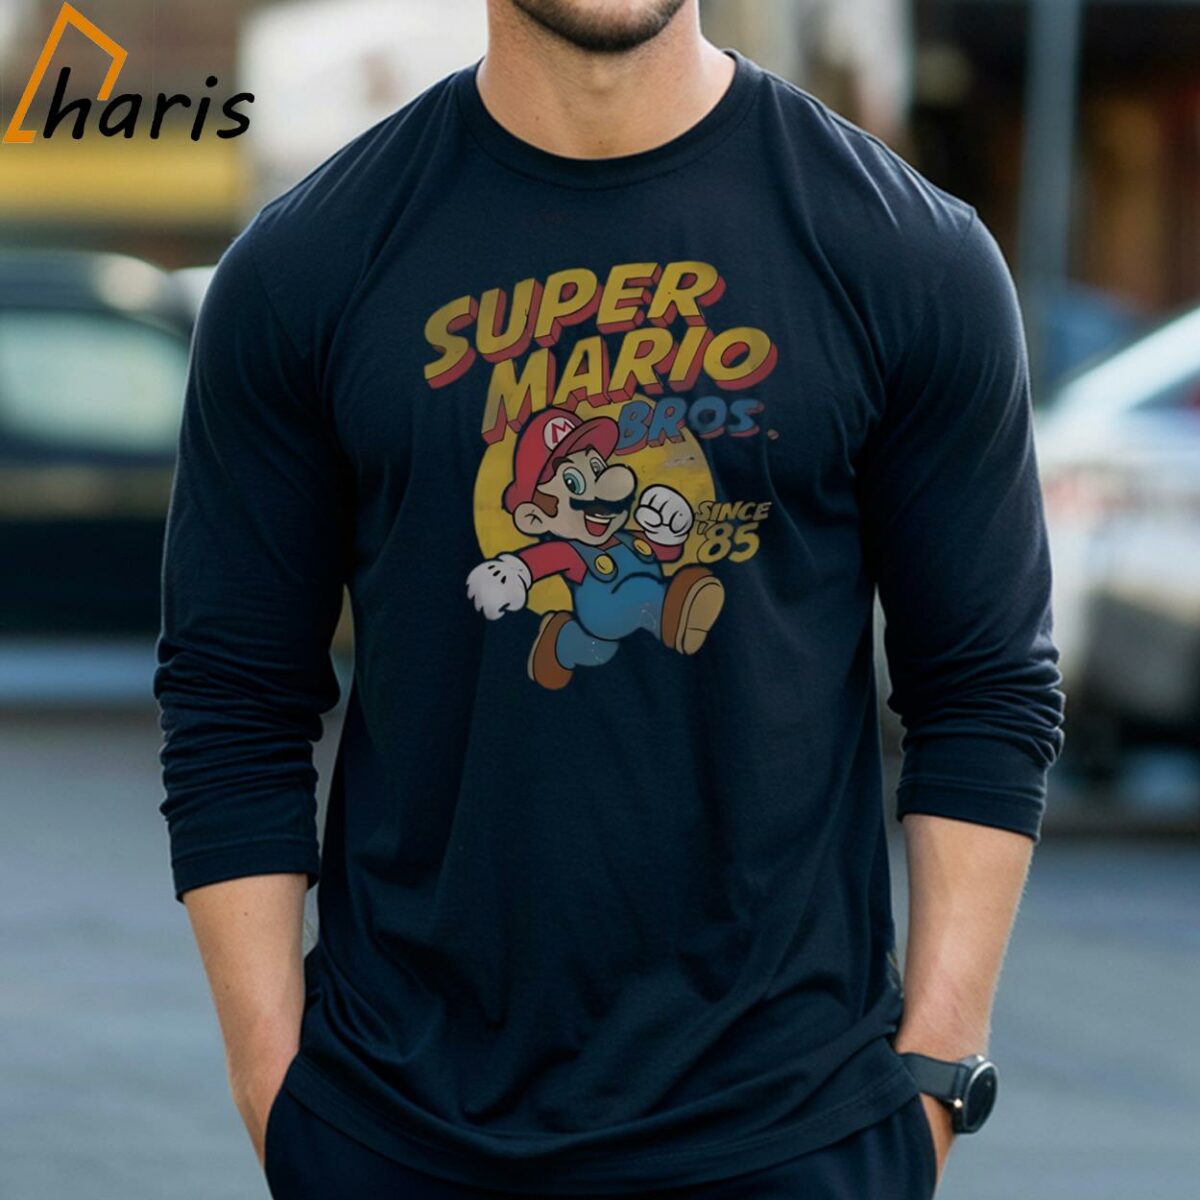 Super Mario Bros Gaming Funny T shirt 3 Long Sleeve T shirt